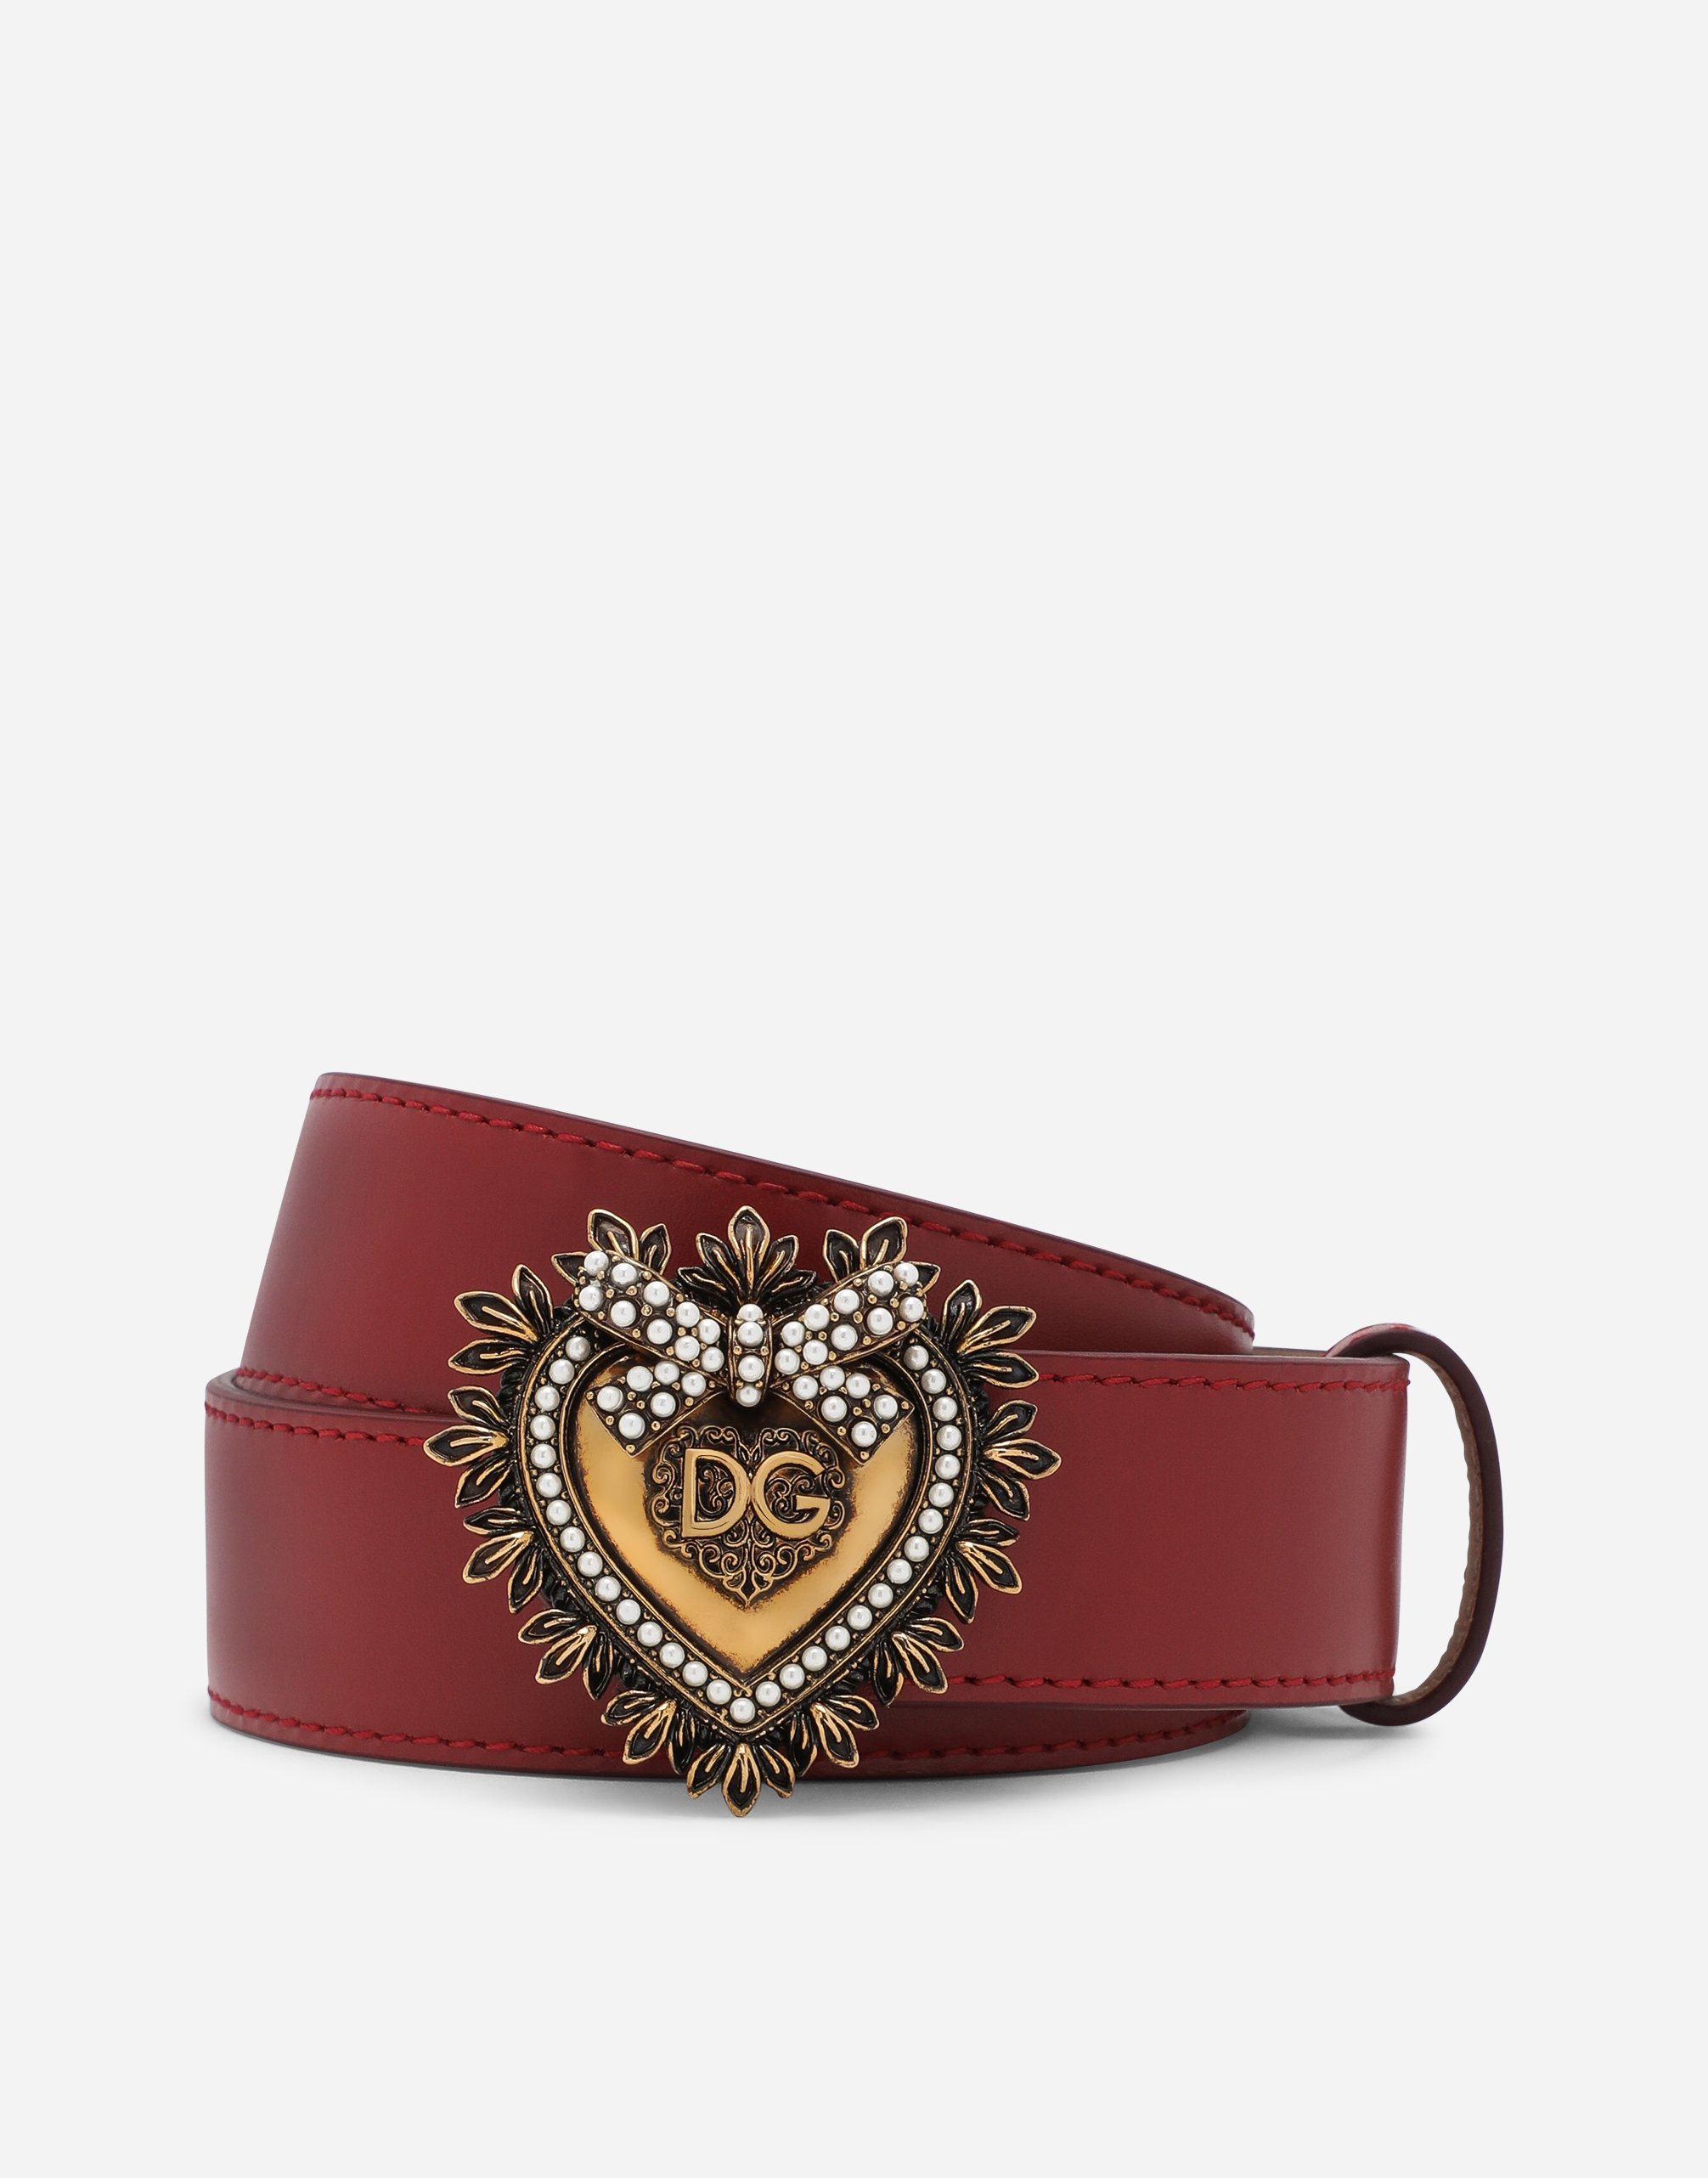 Luxury leather Devotion belt in Red